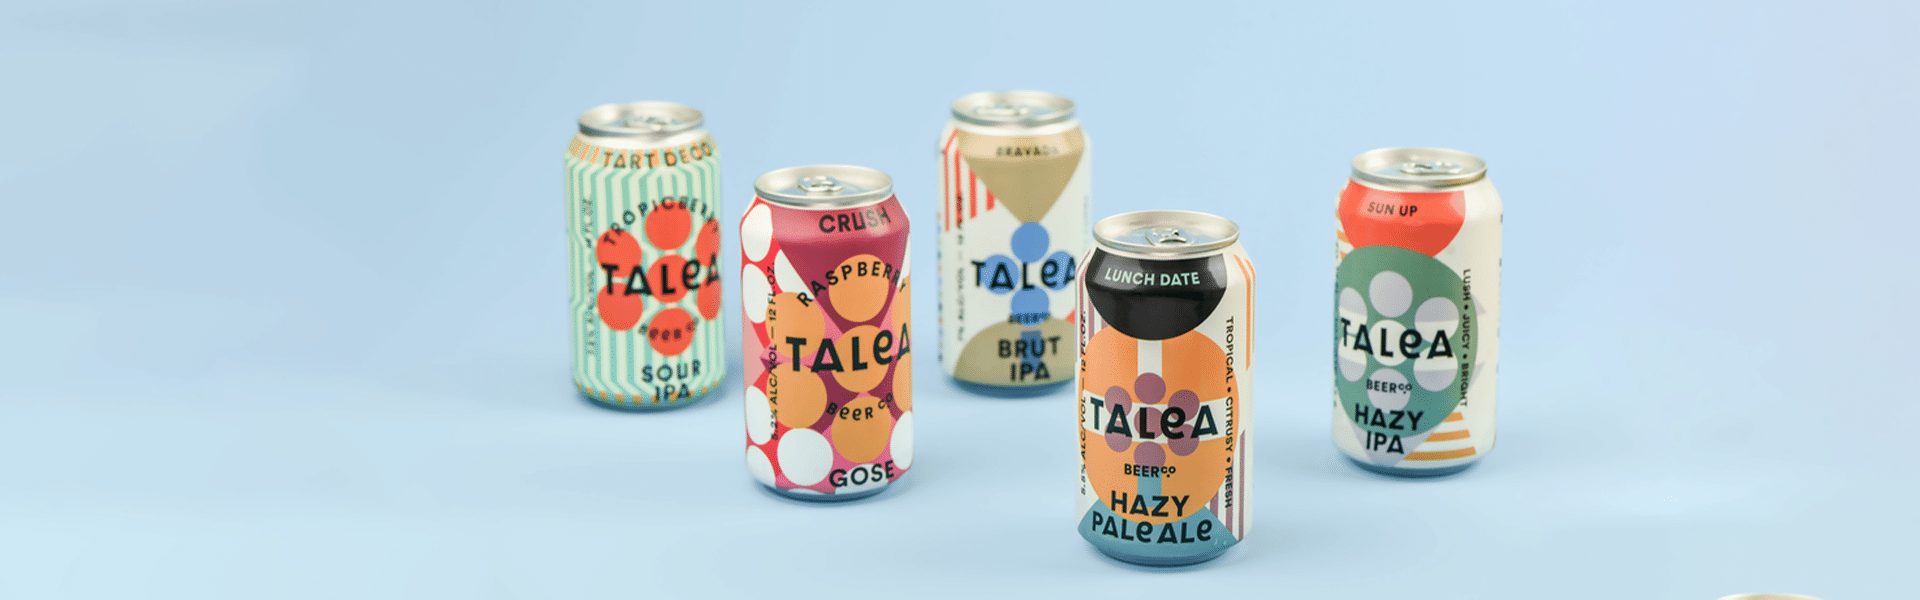 TALEA Beer Co.